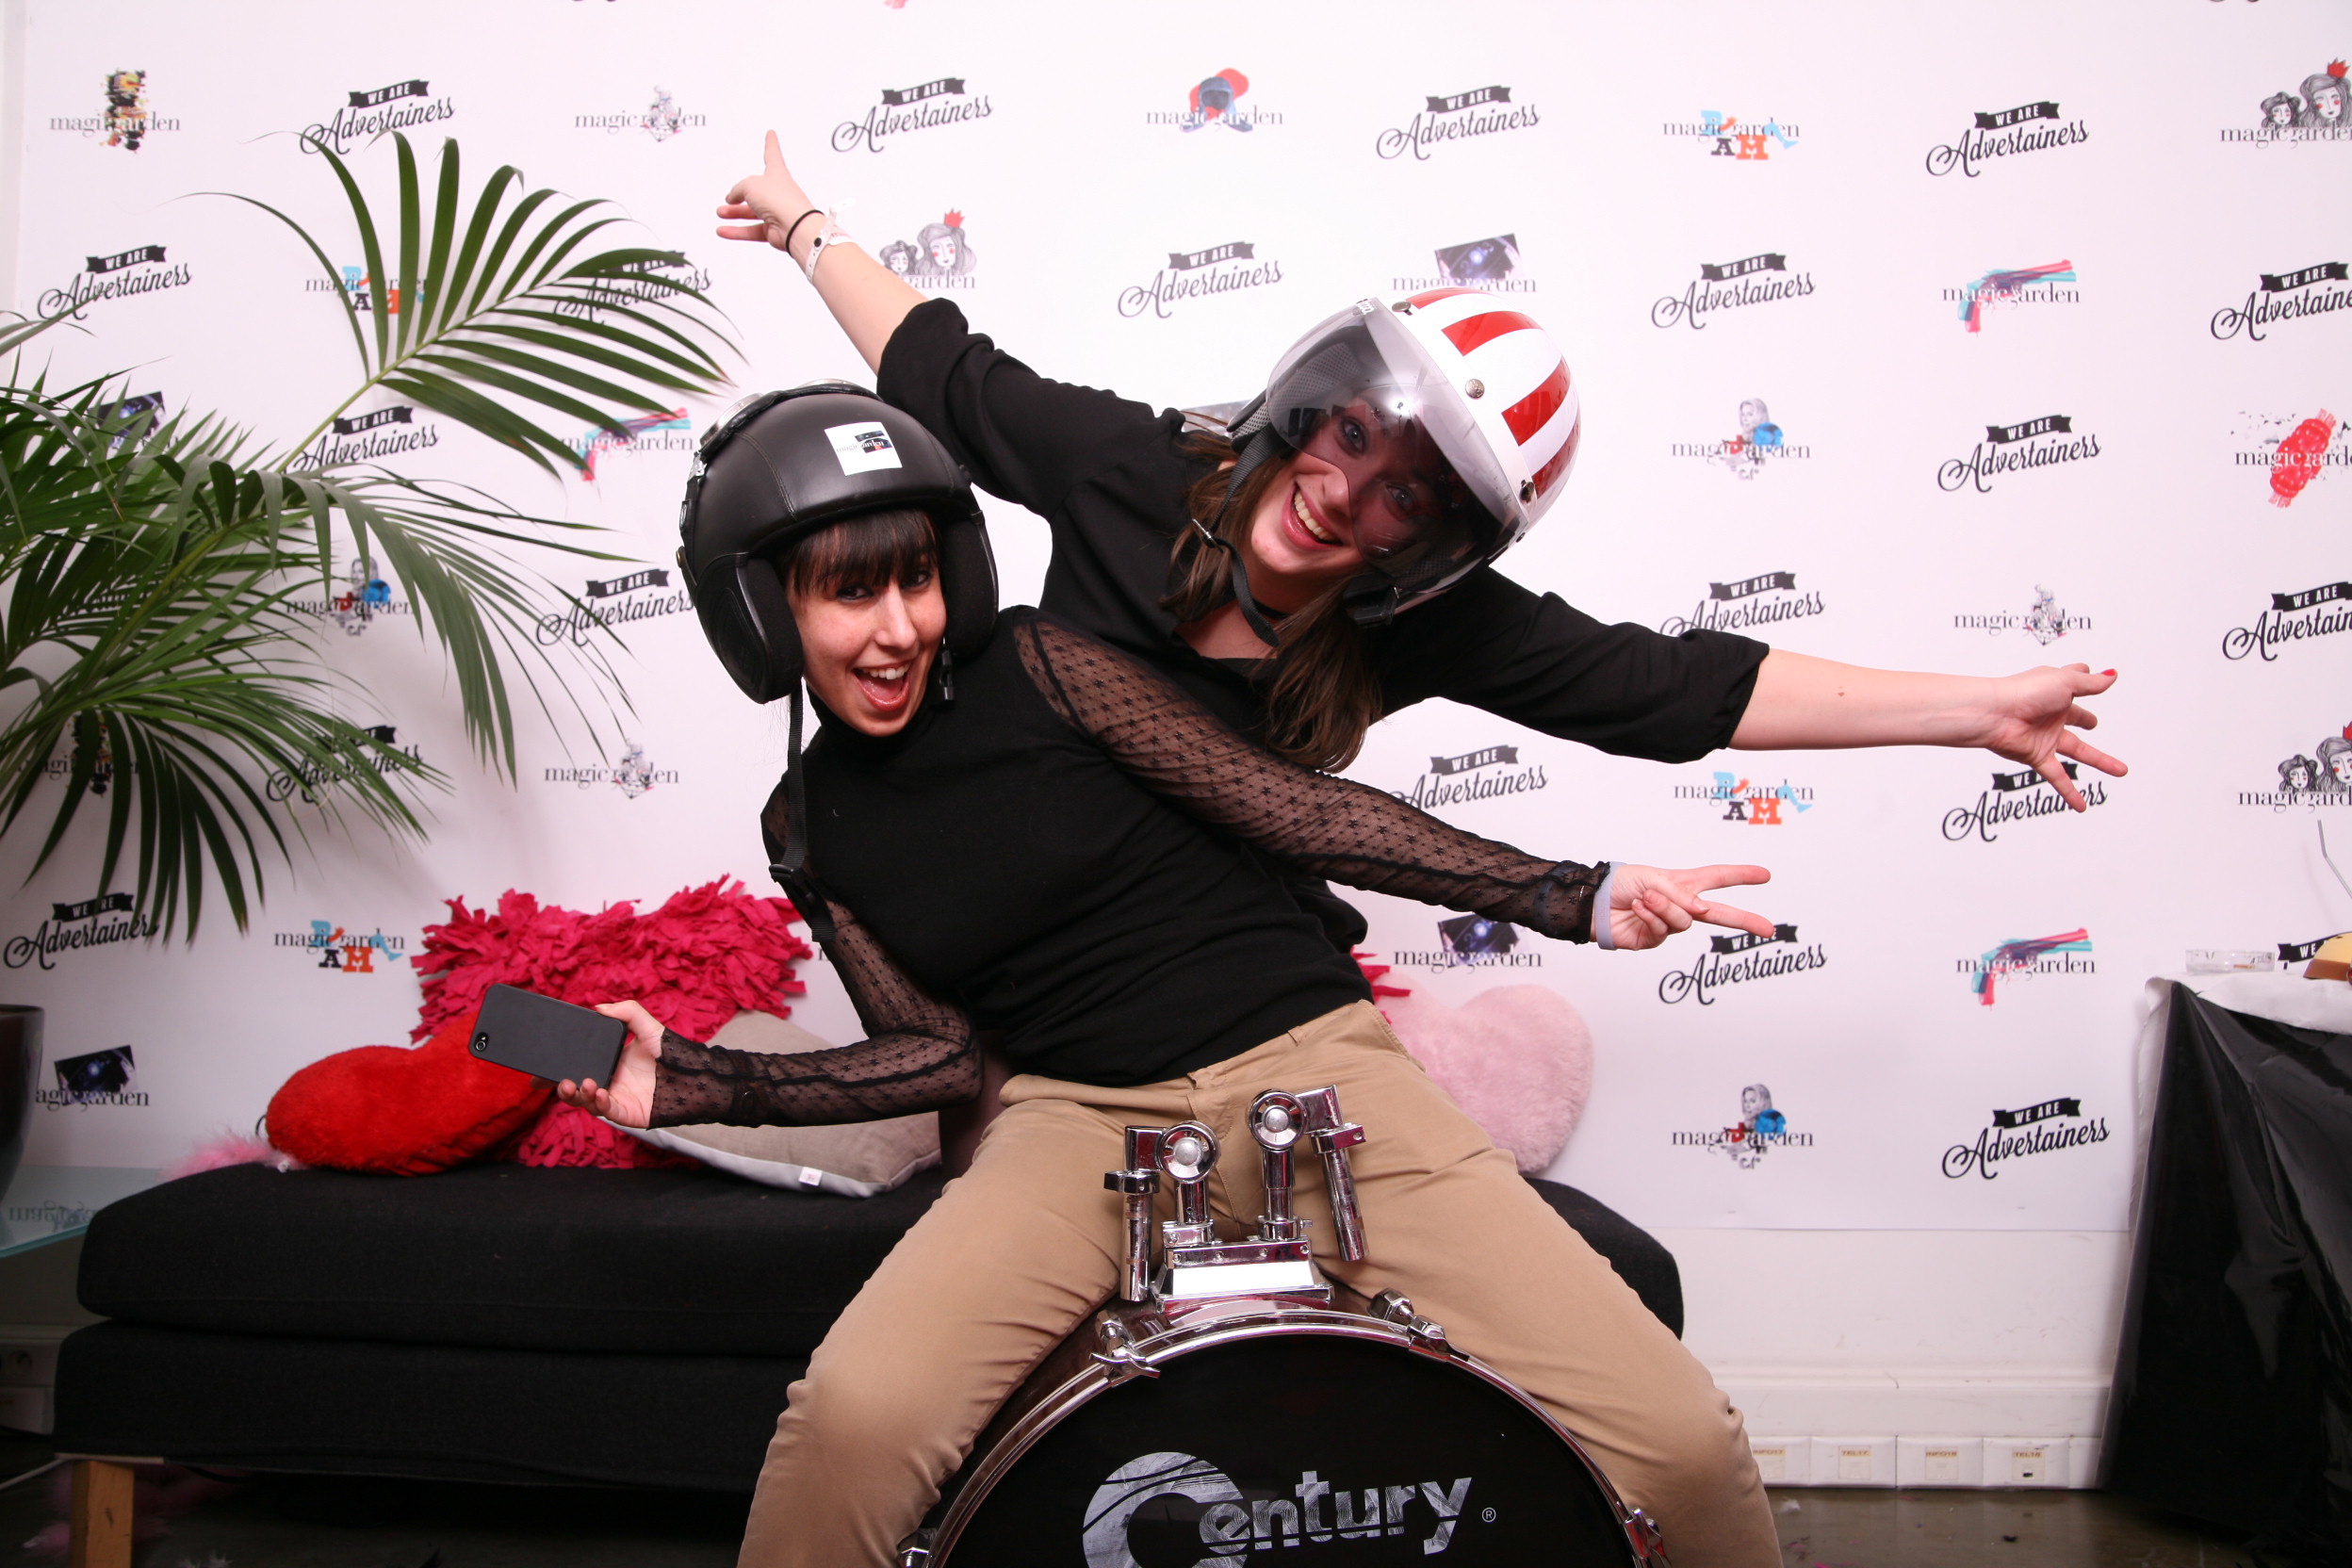 Photo prise dans un Photocall de deux femmes assises sur une grosse caisse et déguisées d'un casque de moto devant un fond de type photocall